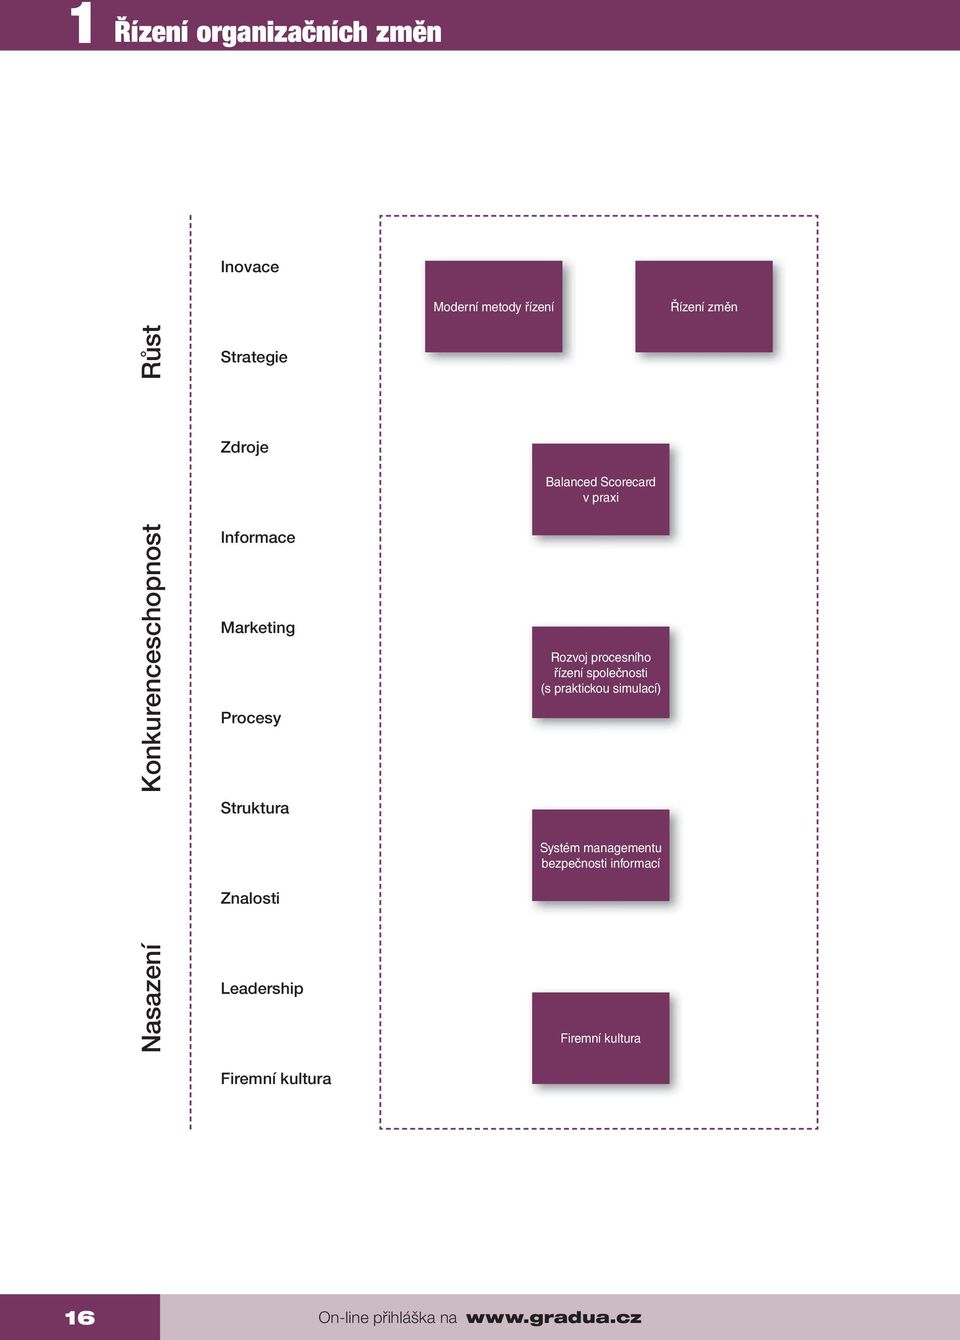 Leadership Firemní kultura Balanced Scorecard v praxi Rozvoj procesního řízení společnosti (s